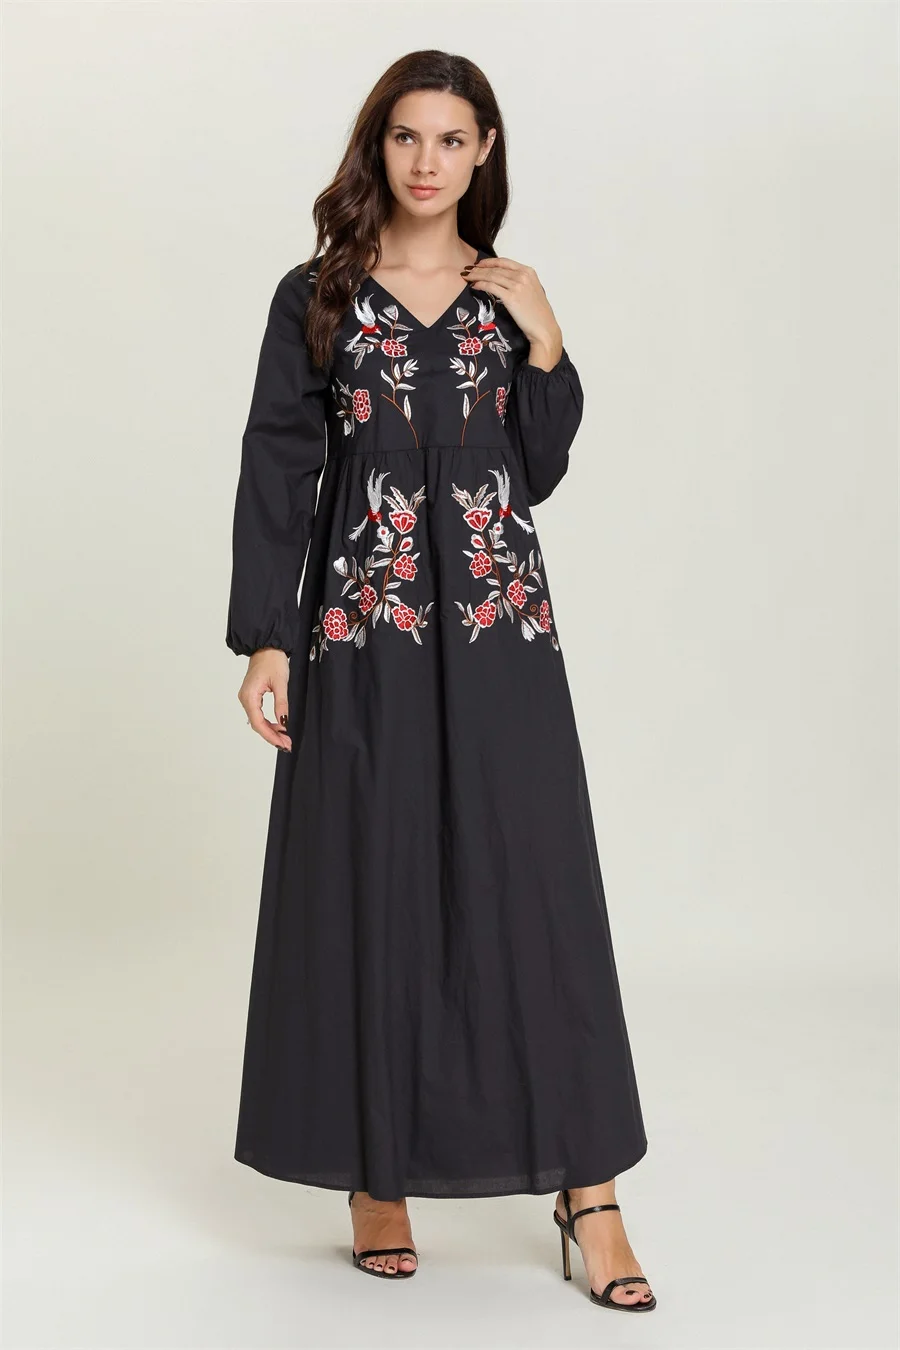 Siskakia винтажное ТРАПЕЦИЕВИДНОЕ длинное платье с v-образным вырезом, Повседневное платье с длинным рукавом и цветочной вышивкой, Аравийский халат, осень, качественная ткань